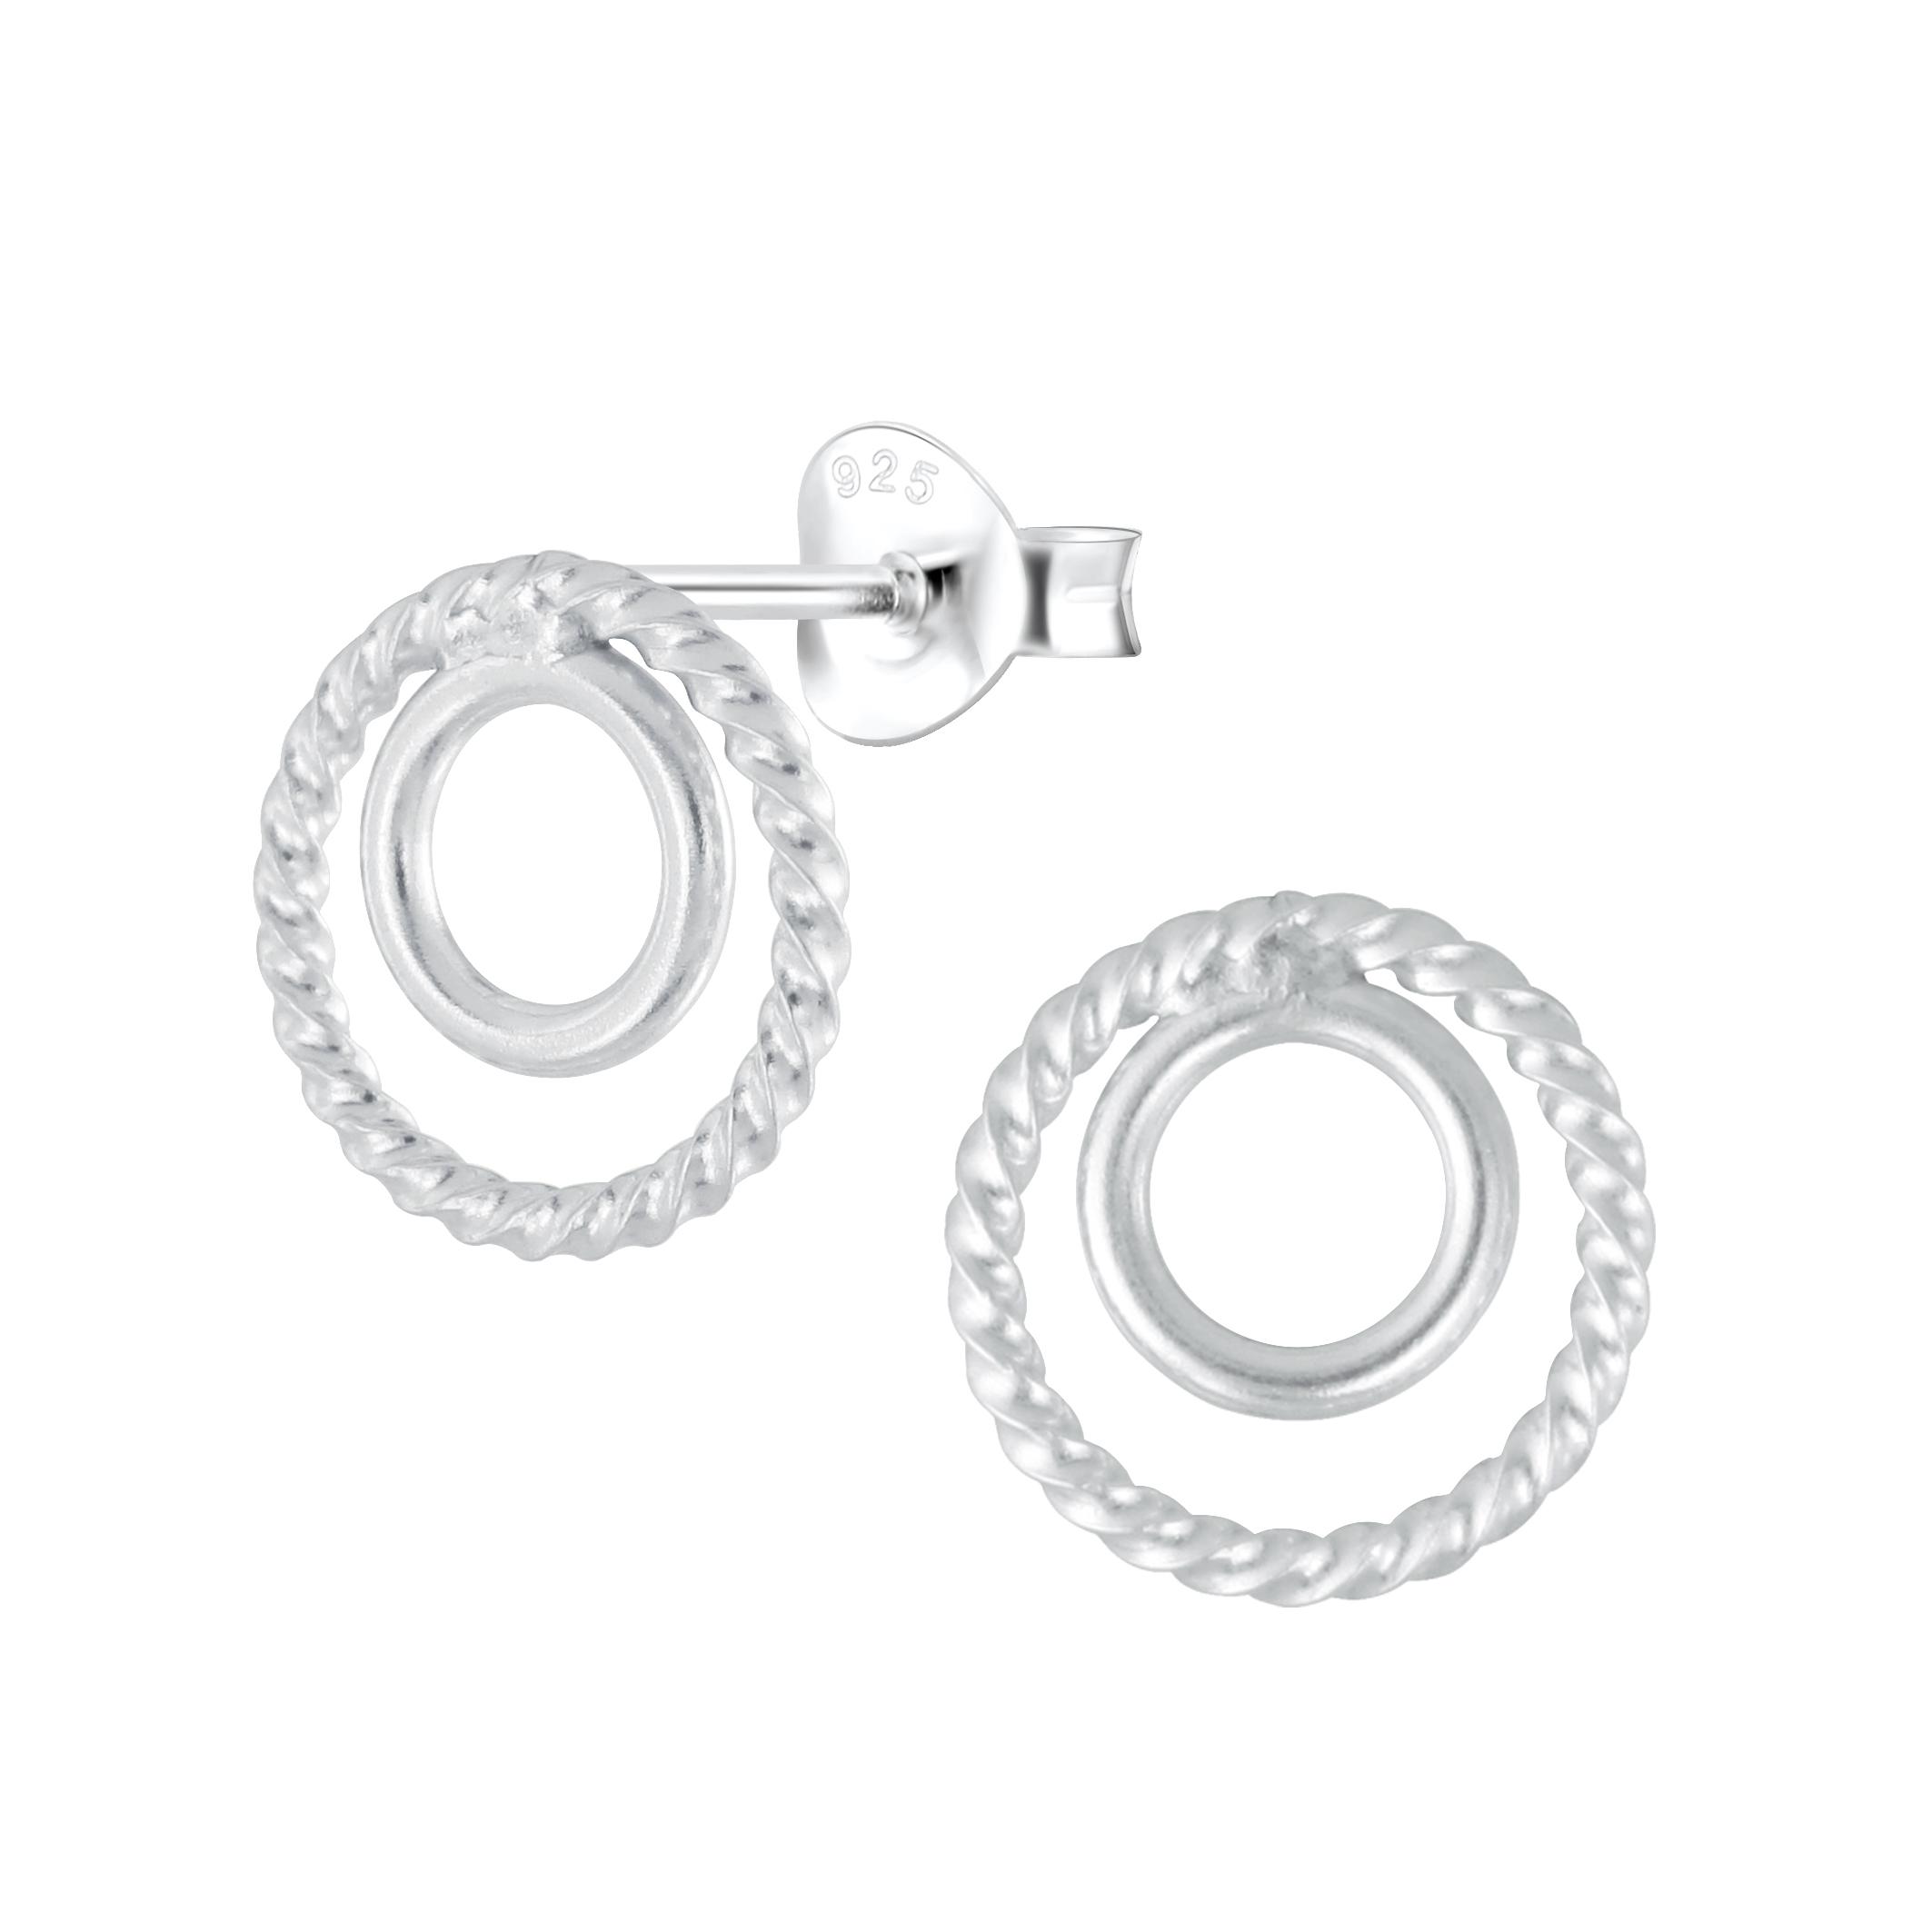 Kleine driehoek Sterling zilveren stud oorbellen Edgy moderne sieraden oorbellen cadeau voor haar Sieraden Oorbellen Oorknopjes CST002 